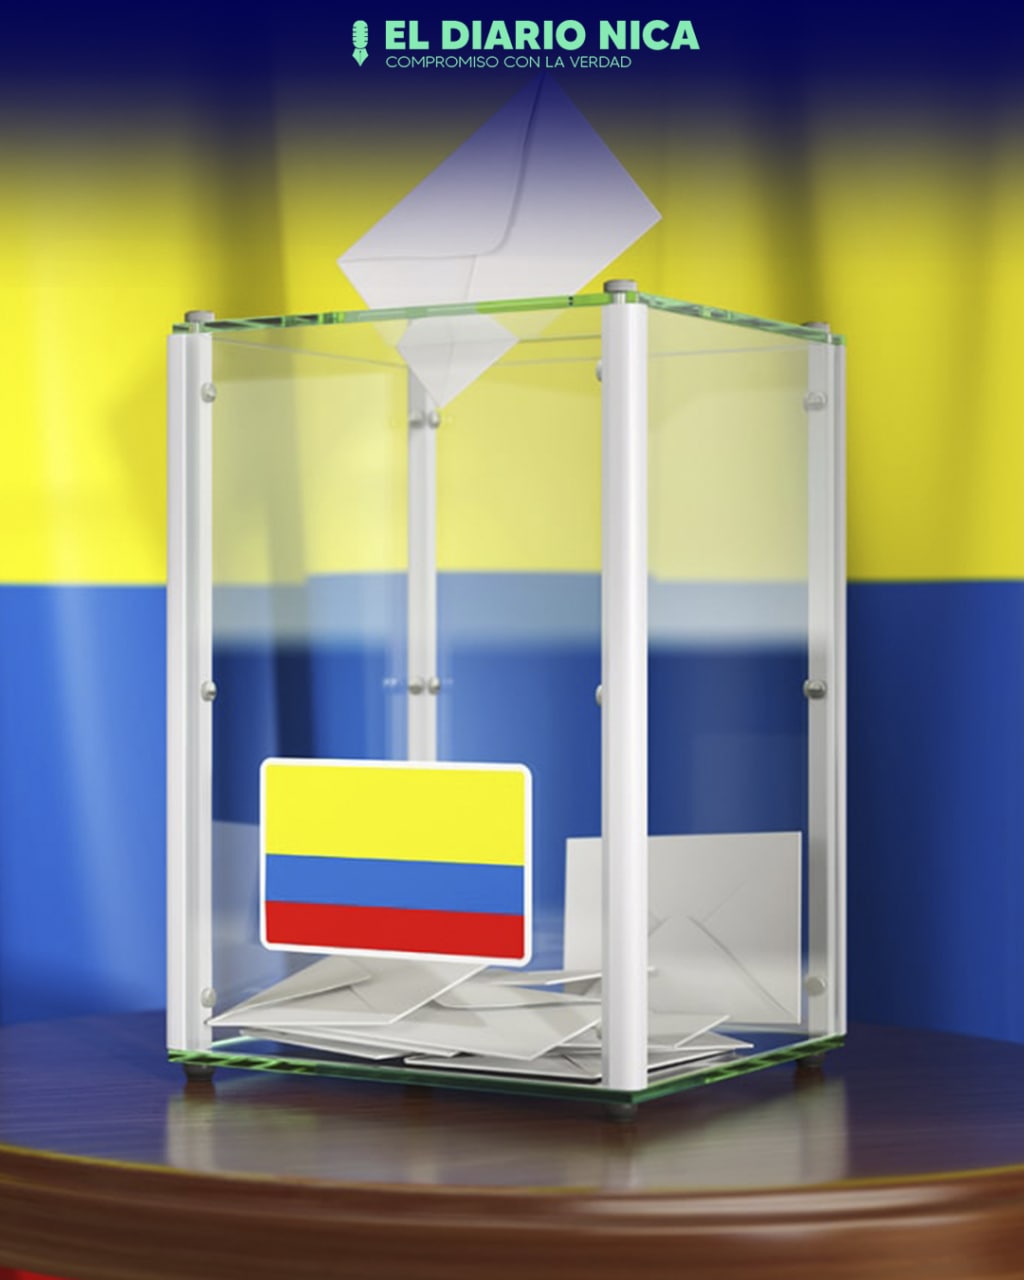 colombianos acuden a las urnas para elegir en balotaje a nuevo mandatario